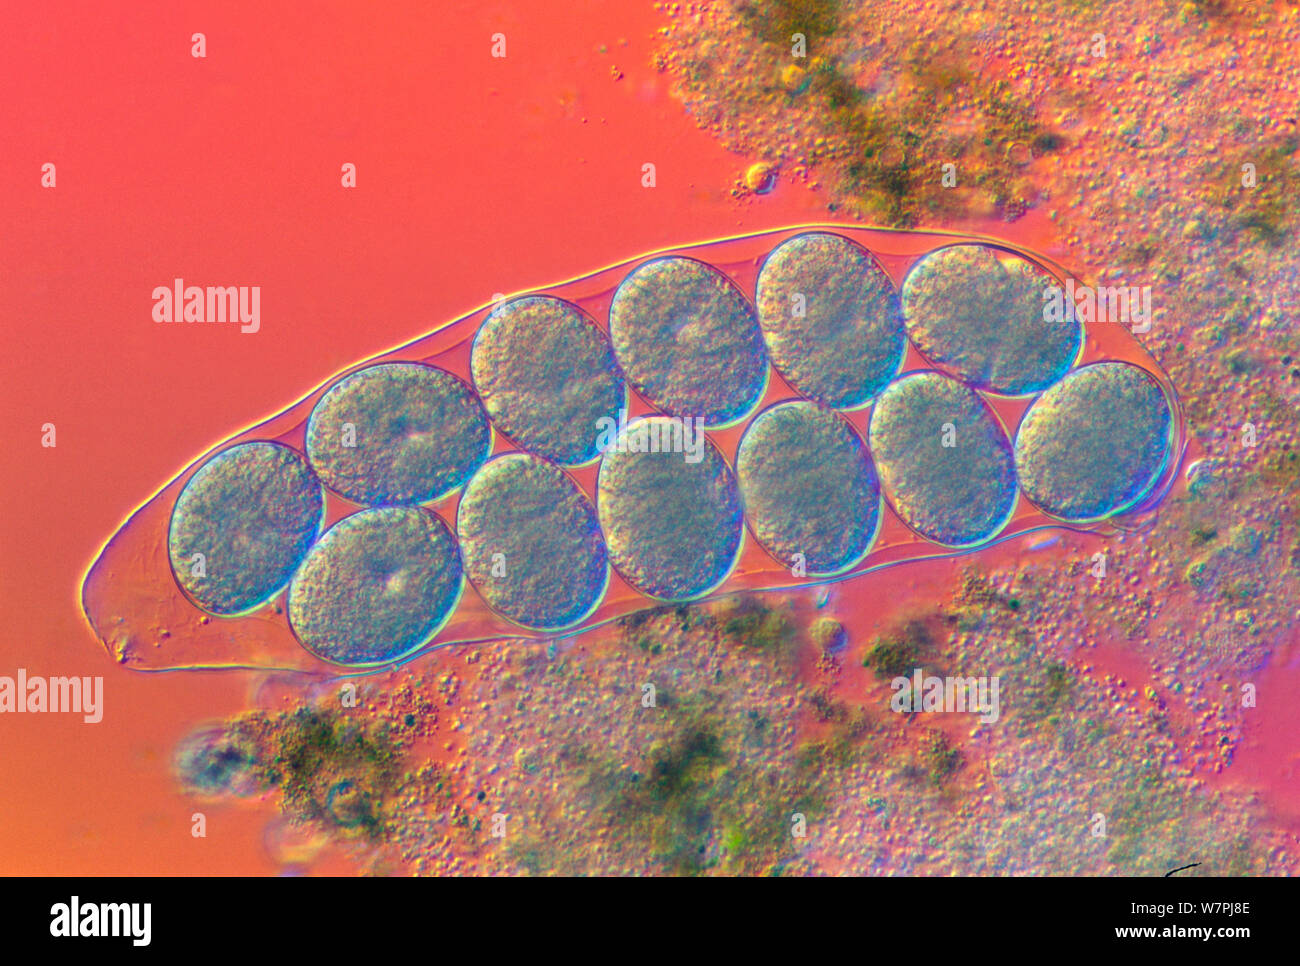 Tardigrade (Hypsibius dujardini) cuticle containing eggs. Stock Photo